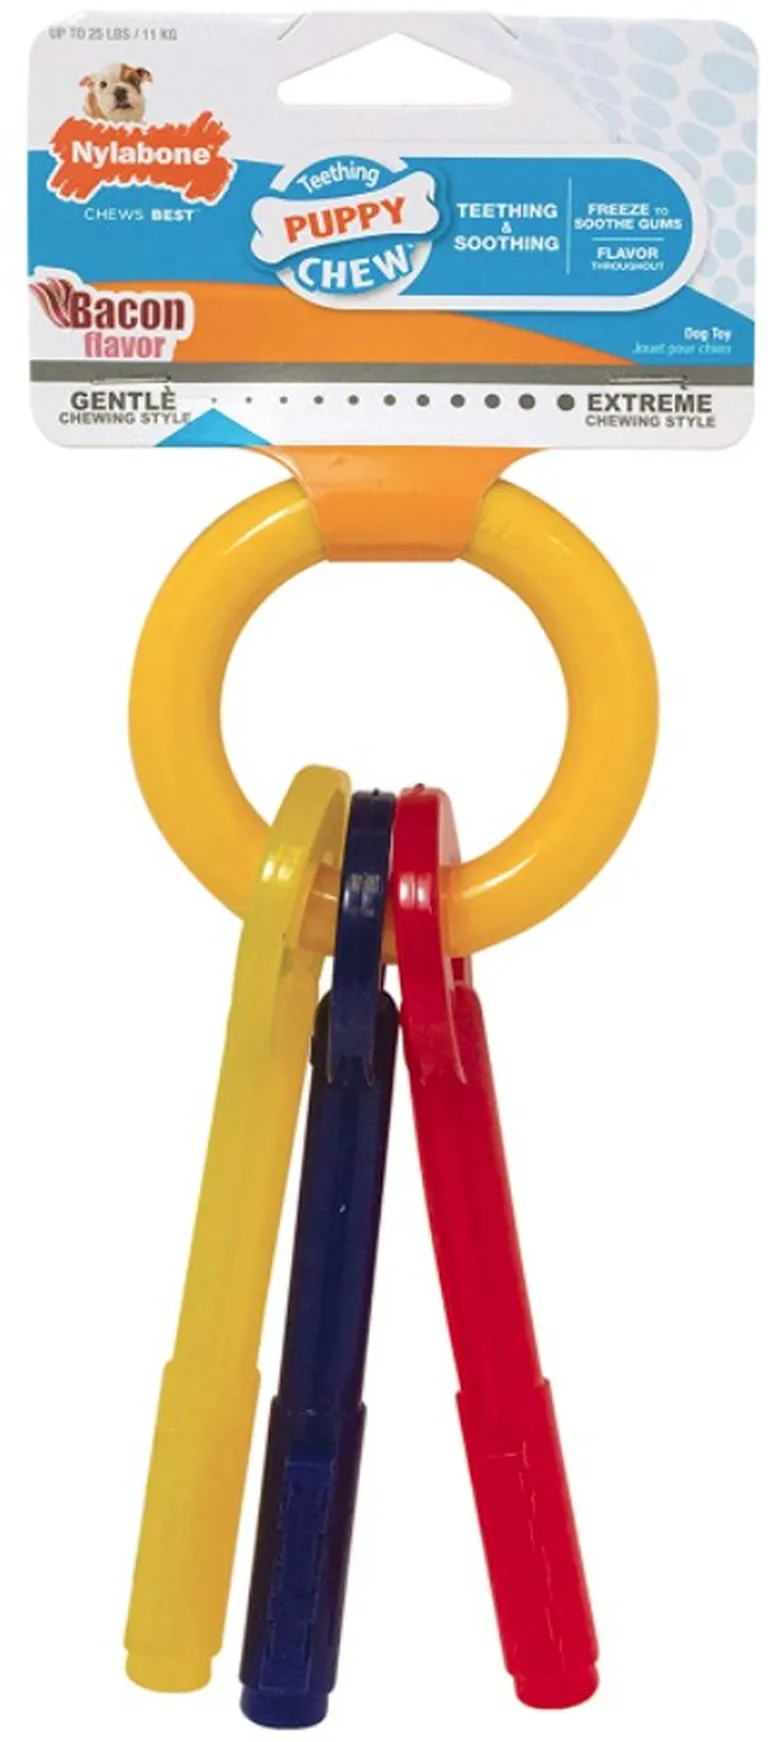 Nylabone Puppy Chew Teething Keys Toy Photo 1